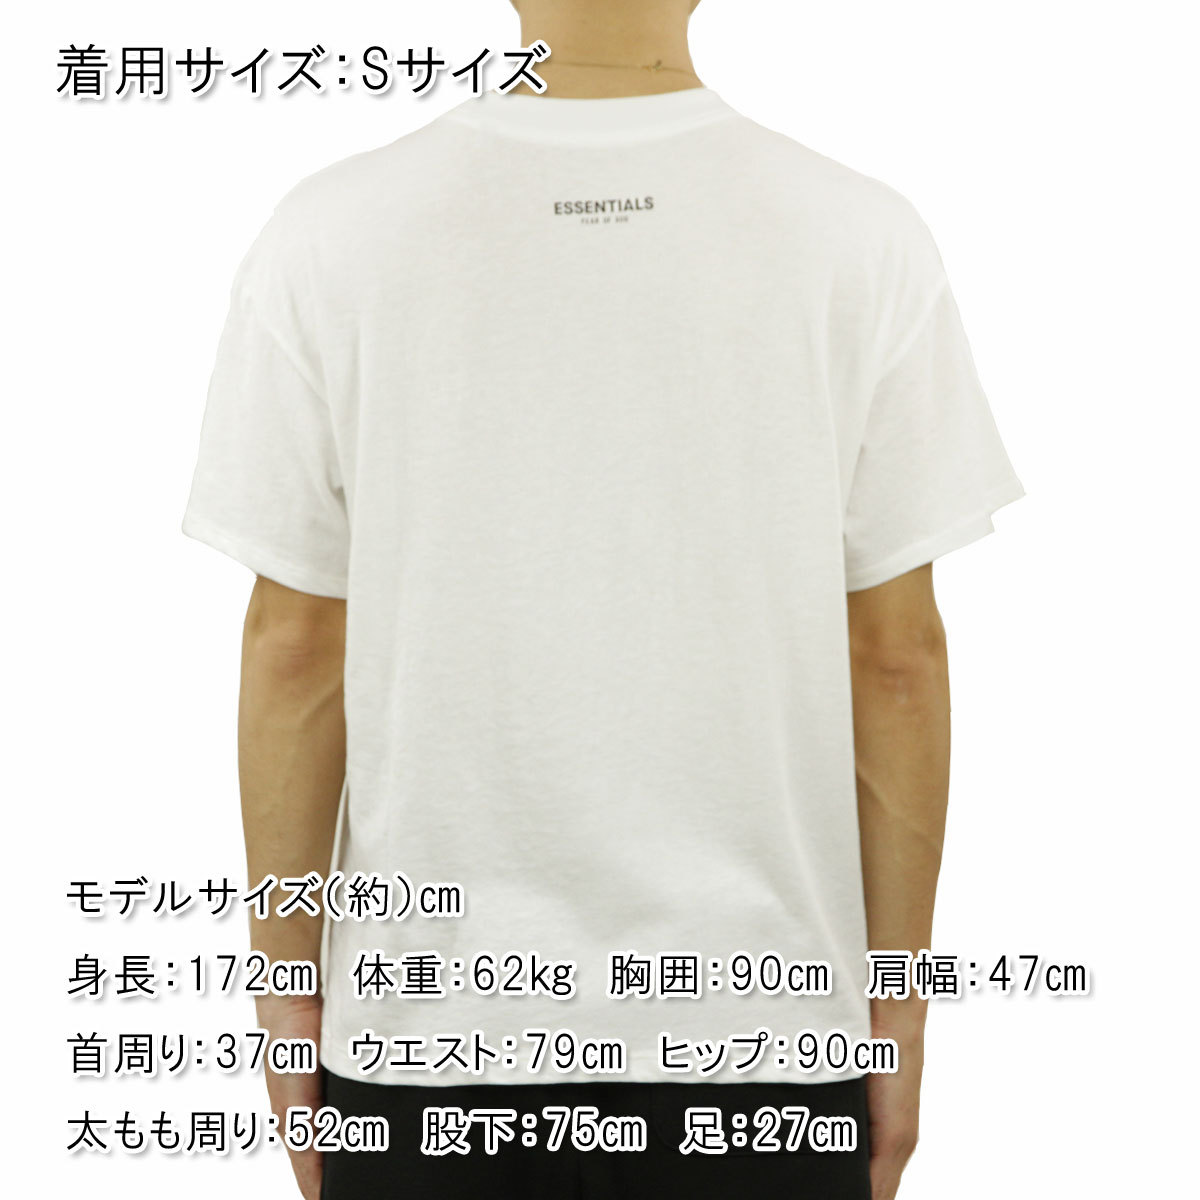 フィアオブゴッド fog essentials Tシャツ メンズ 正規品 FEAR OF GOD エッセンシャルズ 3パック 半袖Tシャツ 3枚組  FOG ESSENTIALS 3 PACK T-SHIRTS WHITE